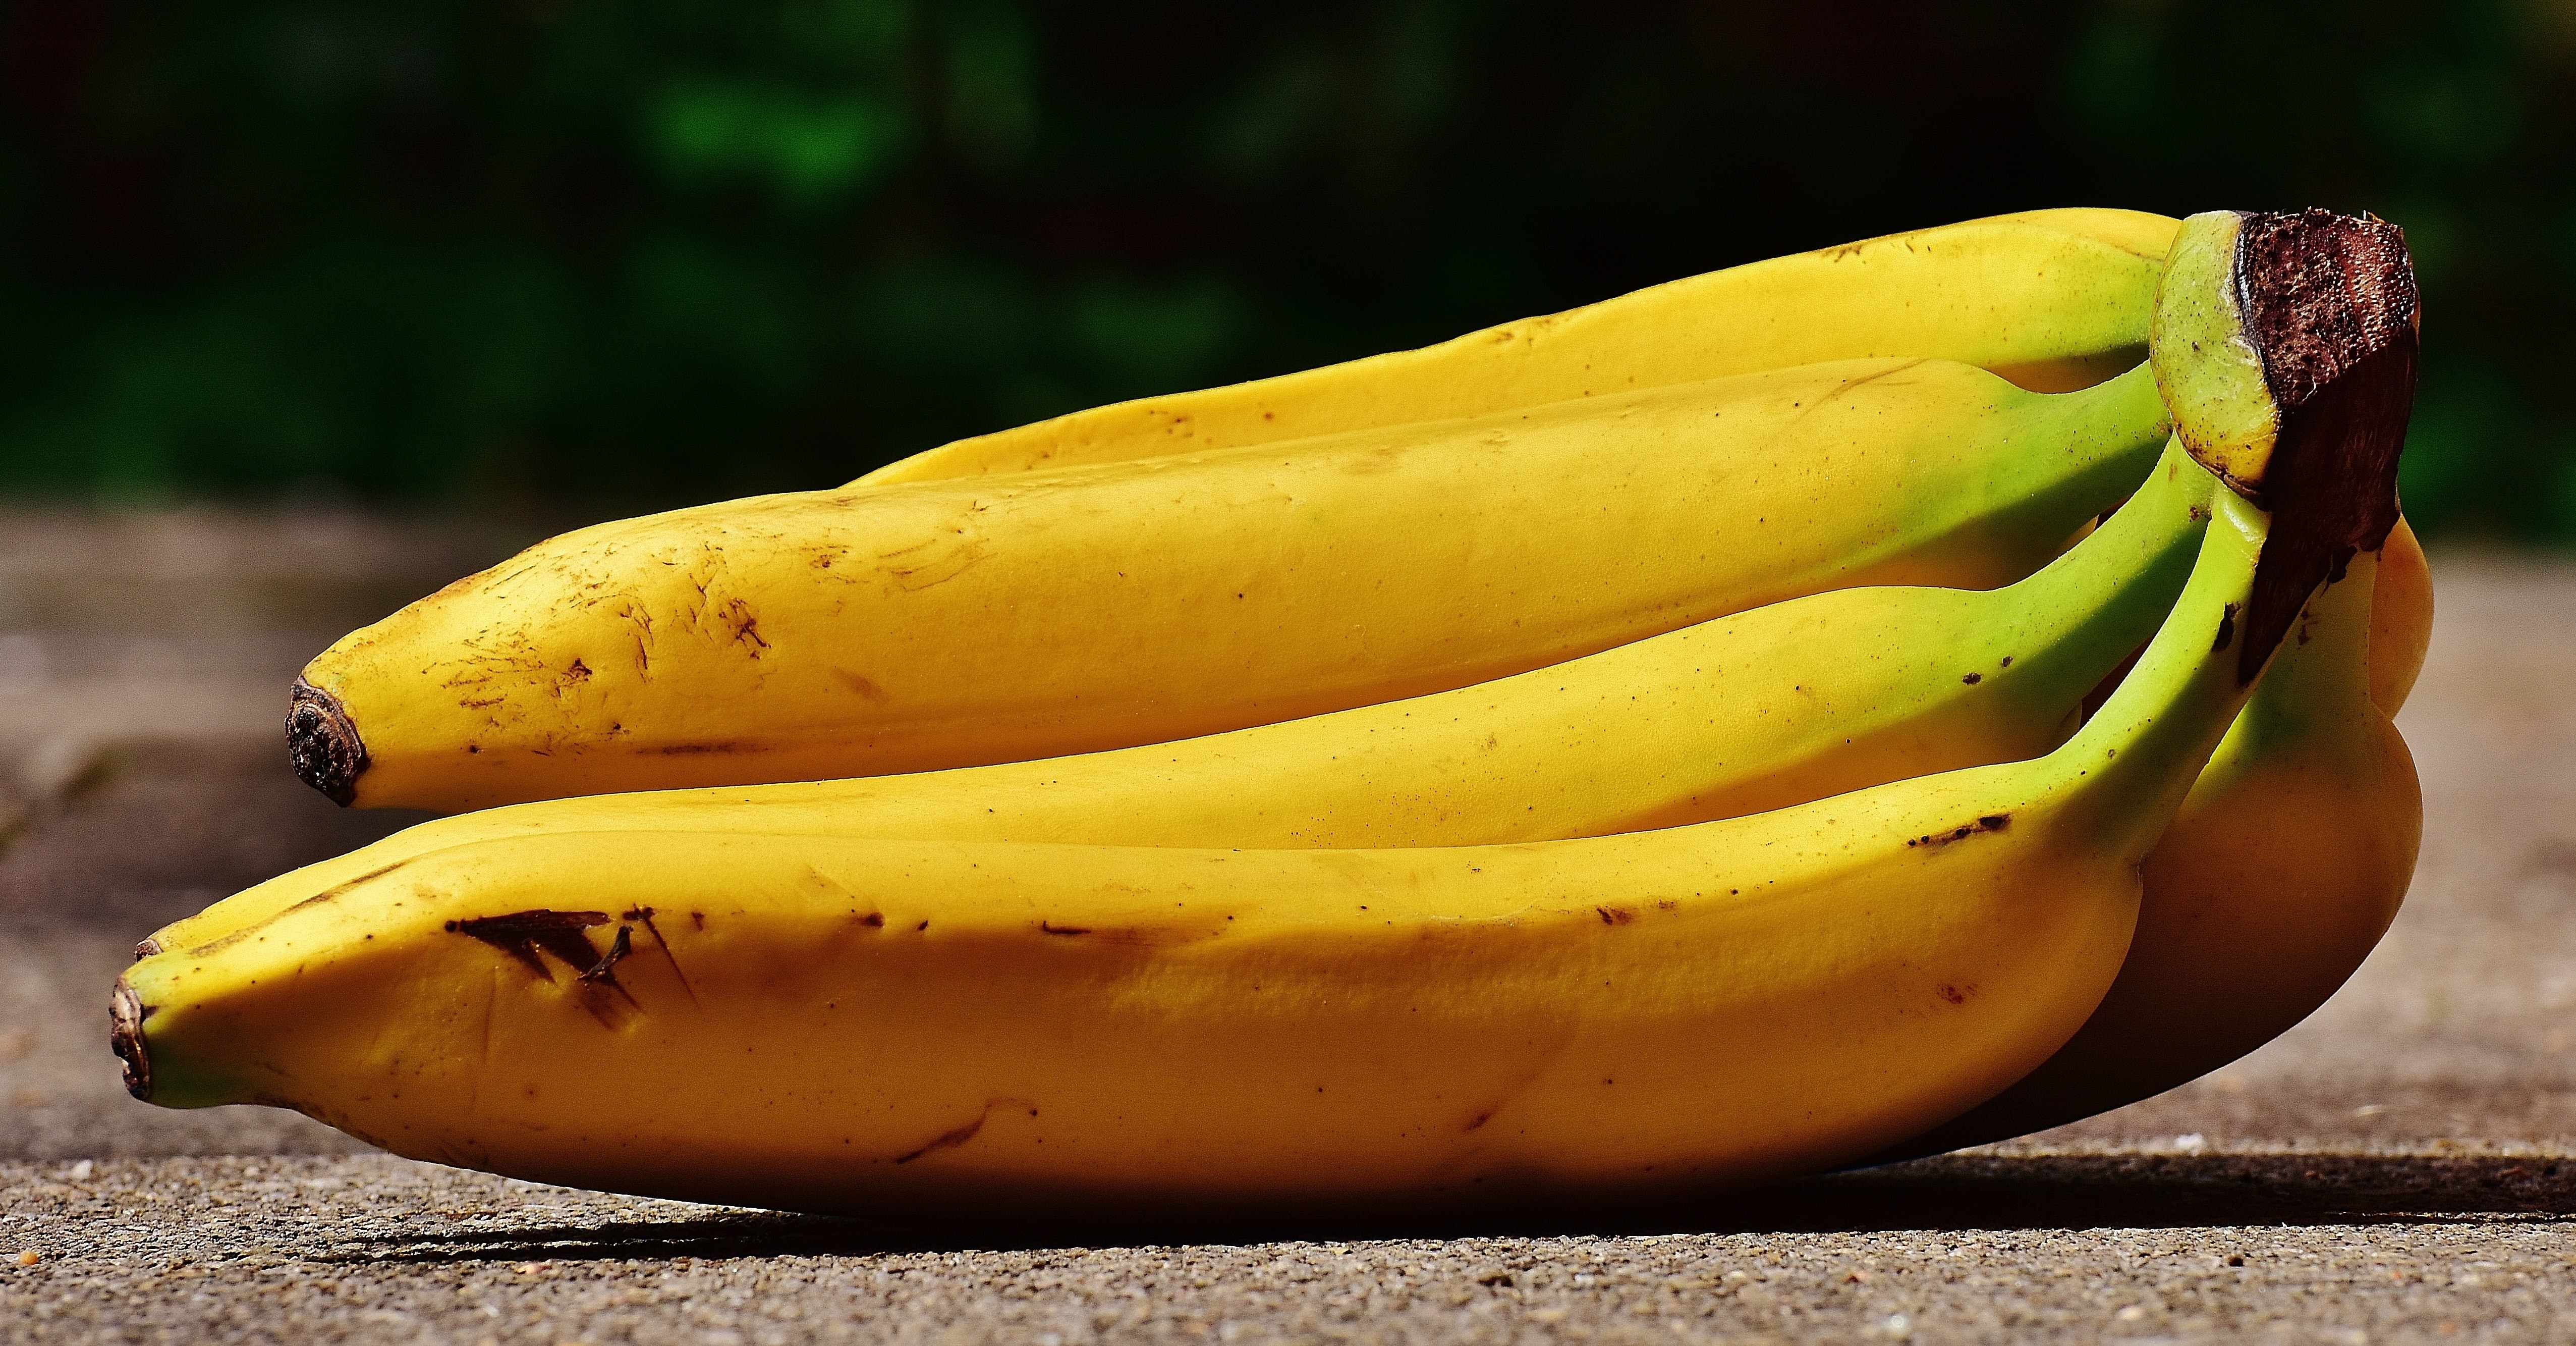 bundle of banana